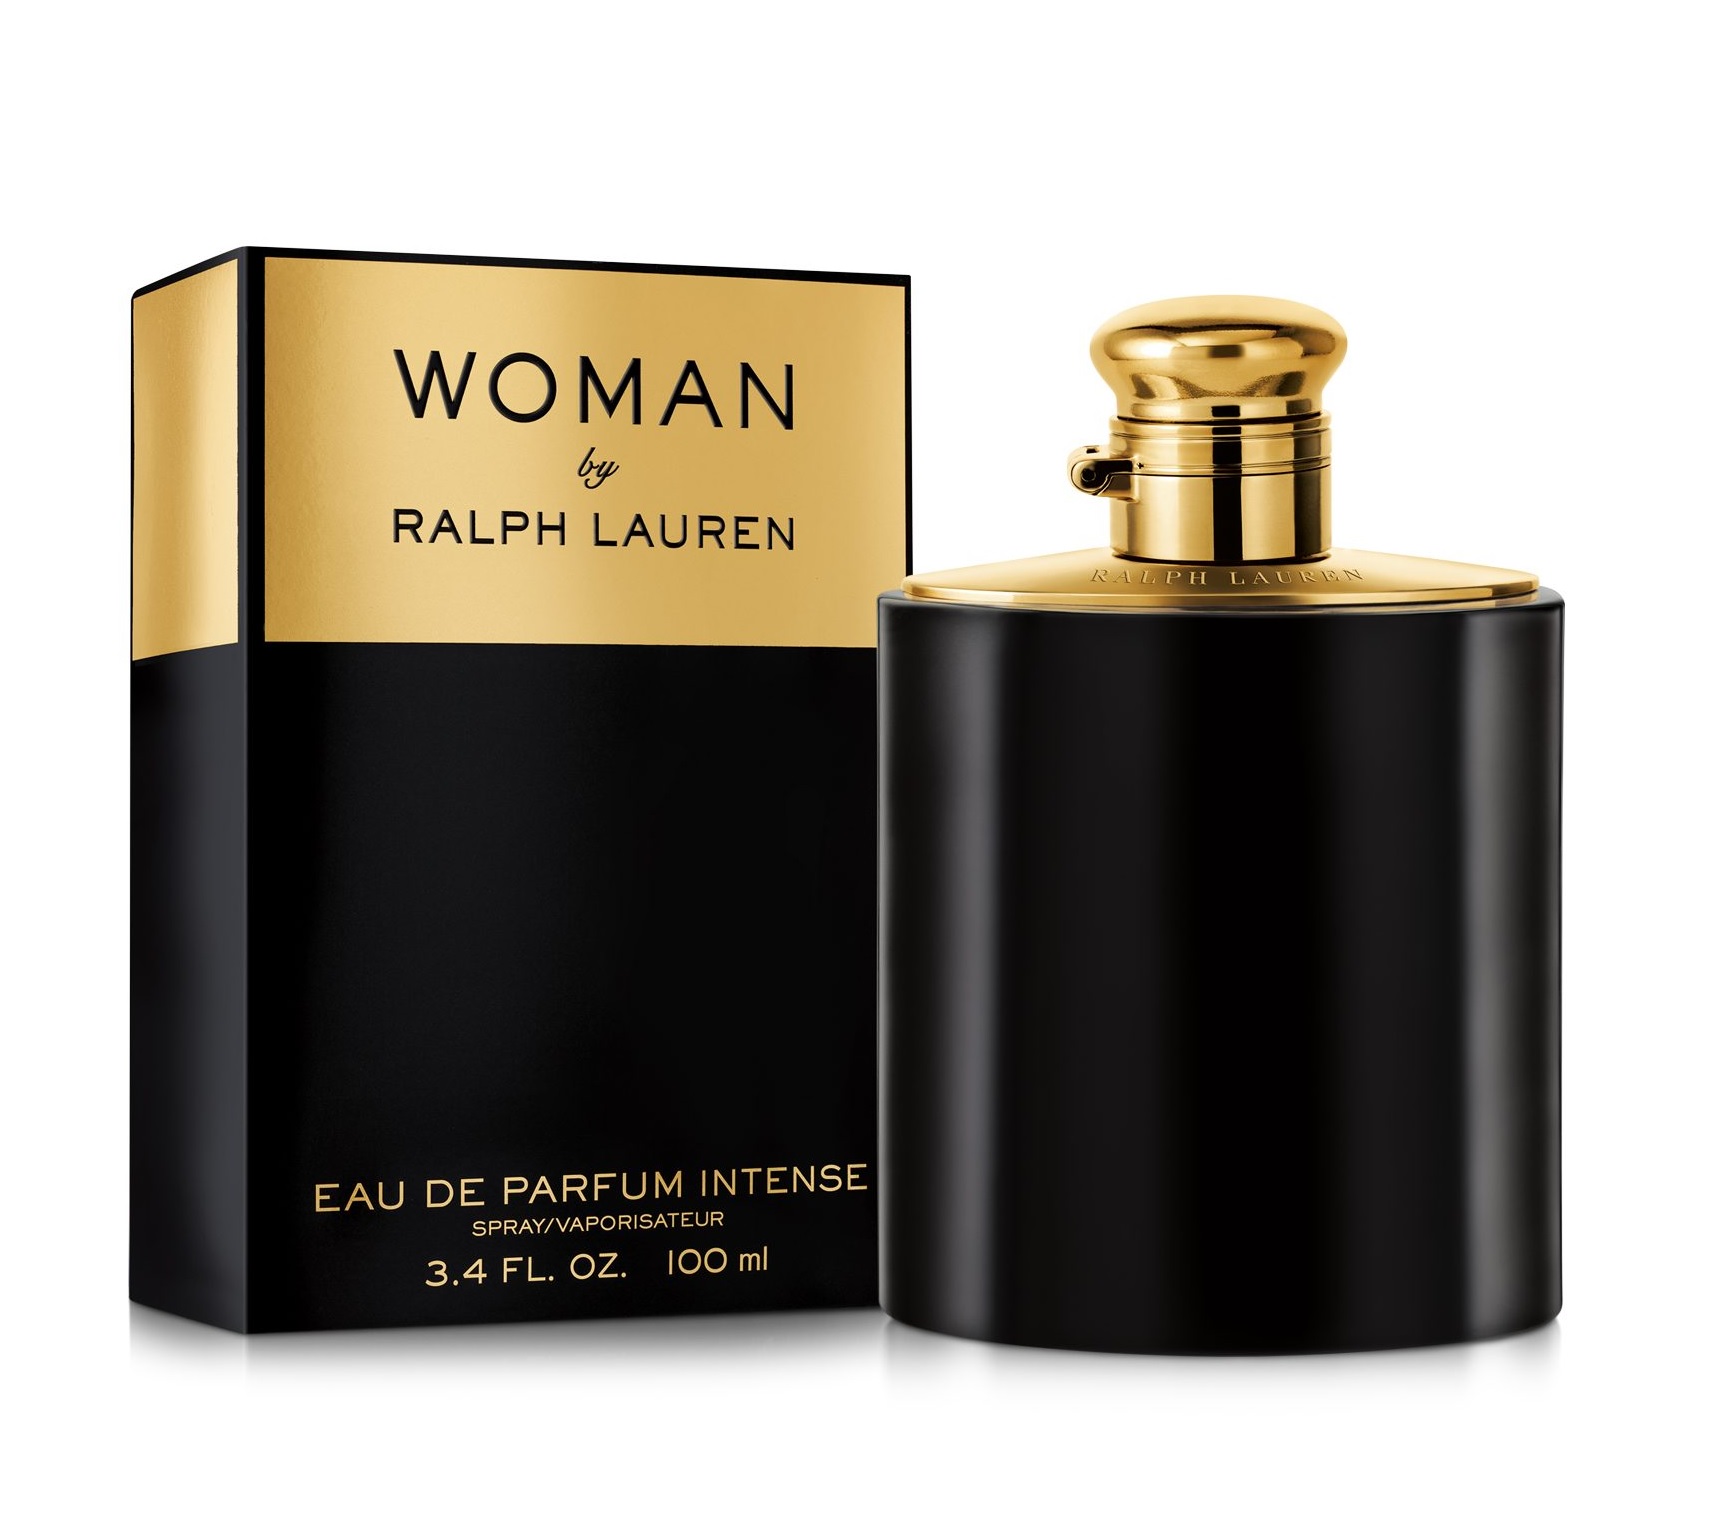 Woman by Ralph Lauren Intense Ralph Lauren parfum - een nieuwe geur